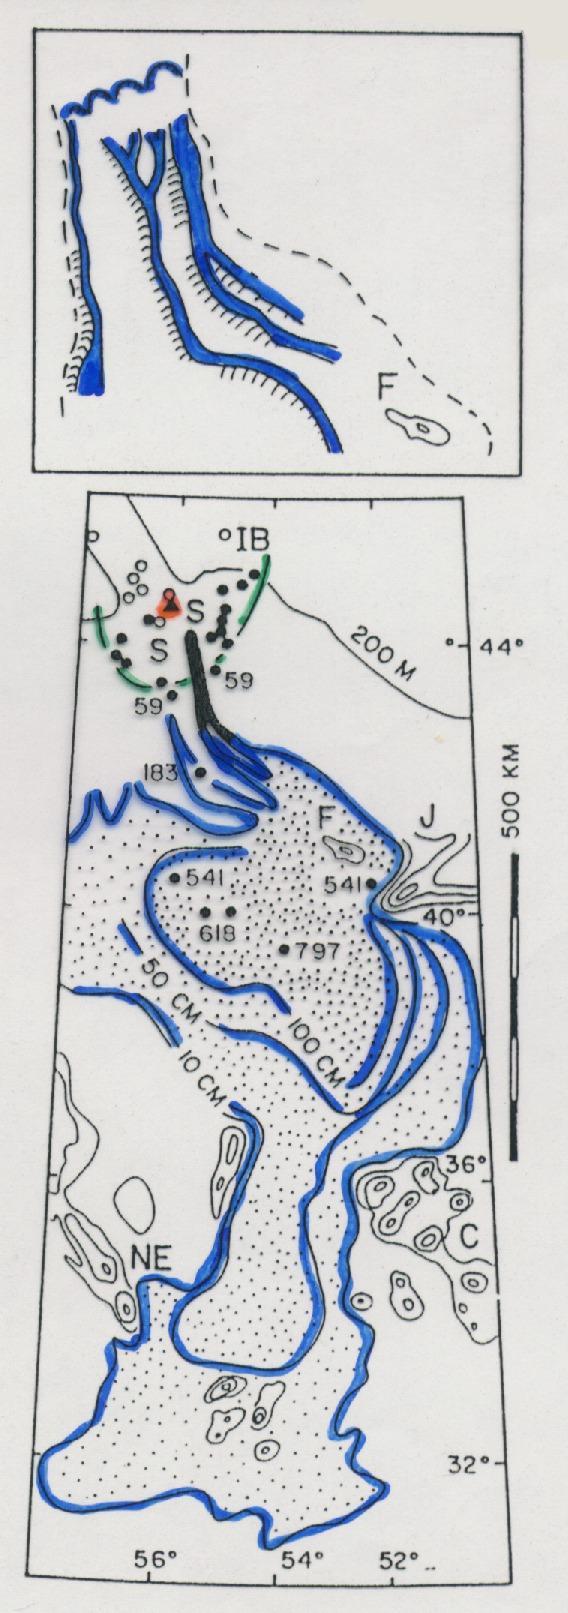 Terremoto de Grand Banks (Newfoundland, 1929) Slumping Ruptura instantánea Límite